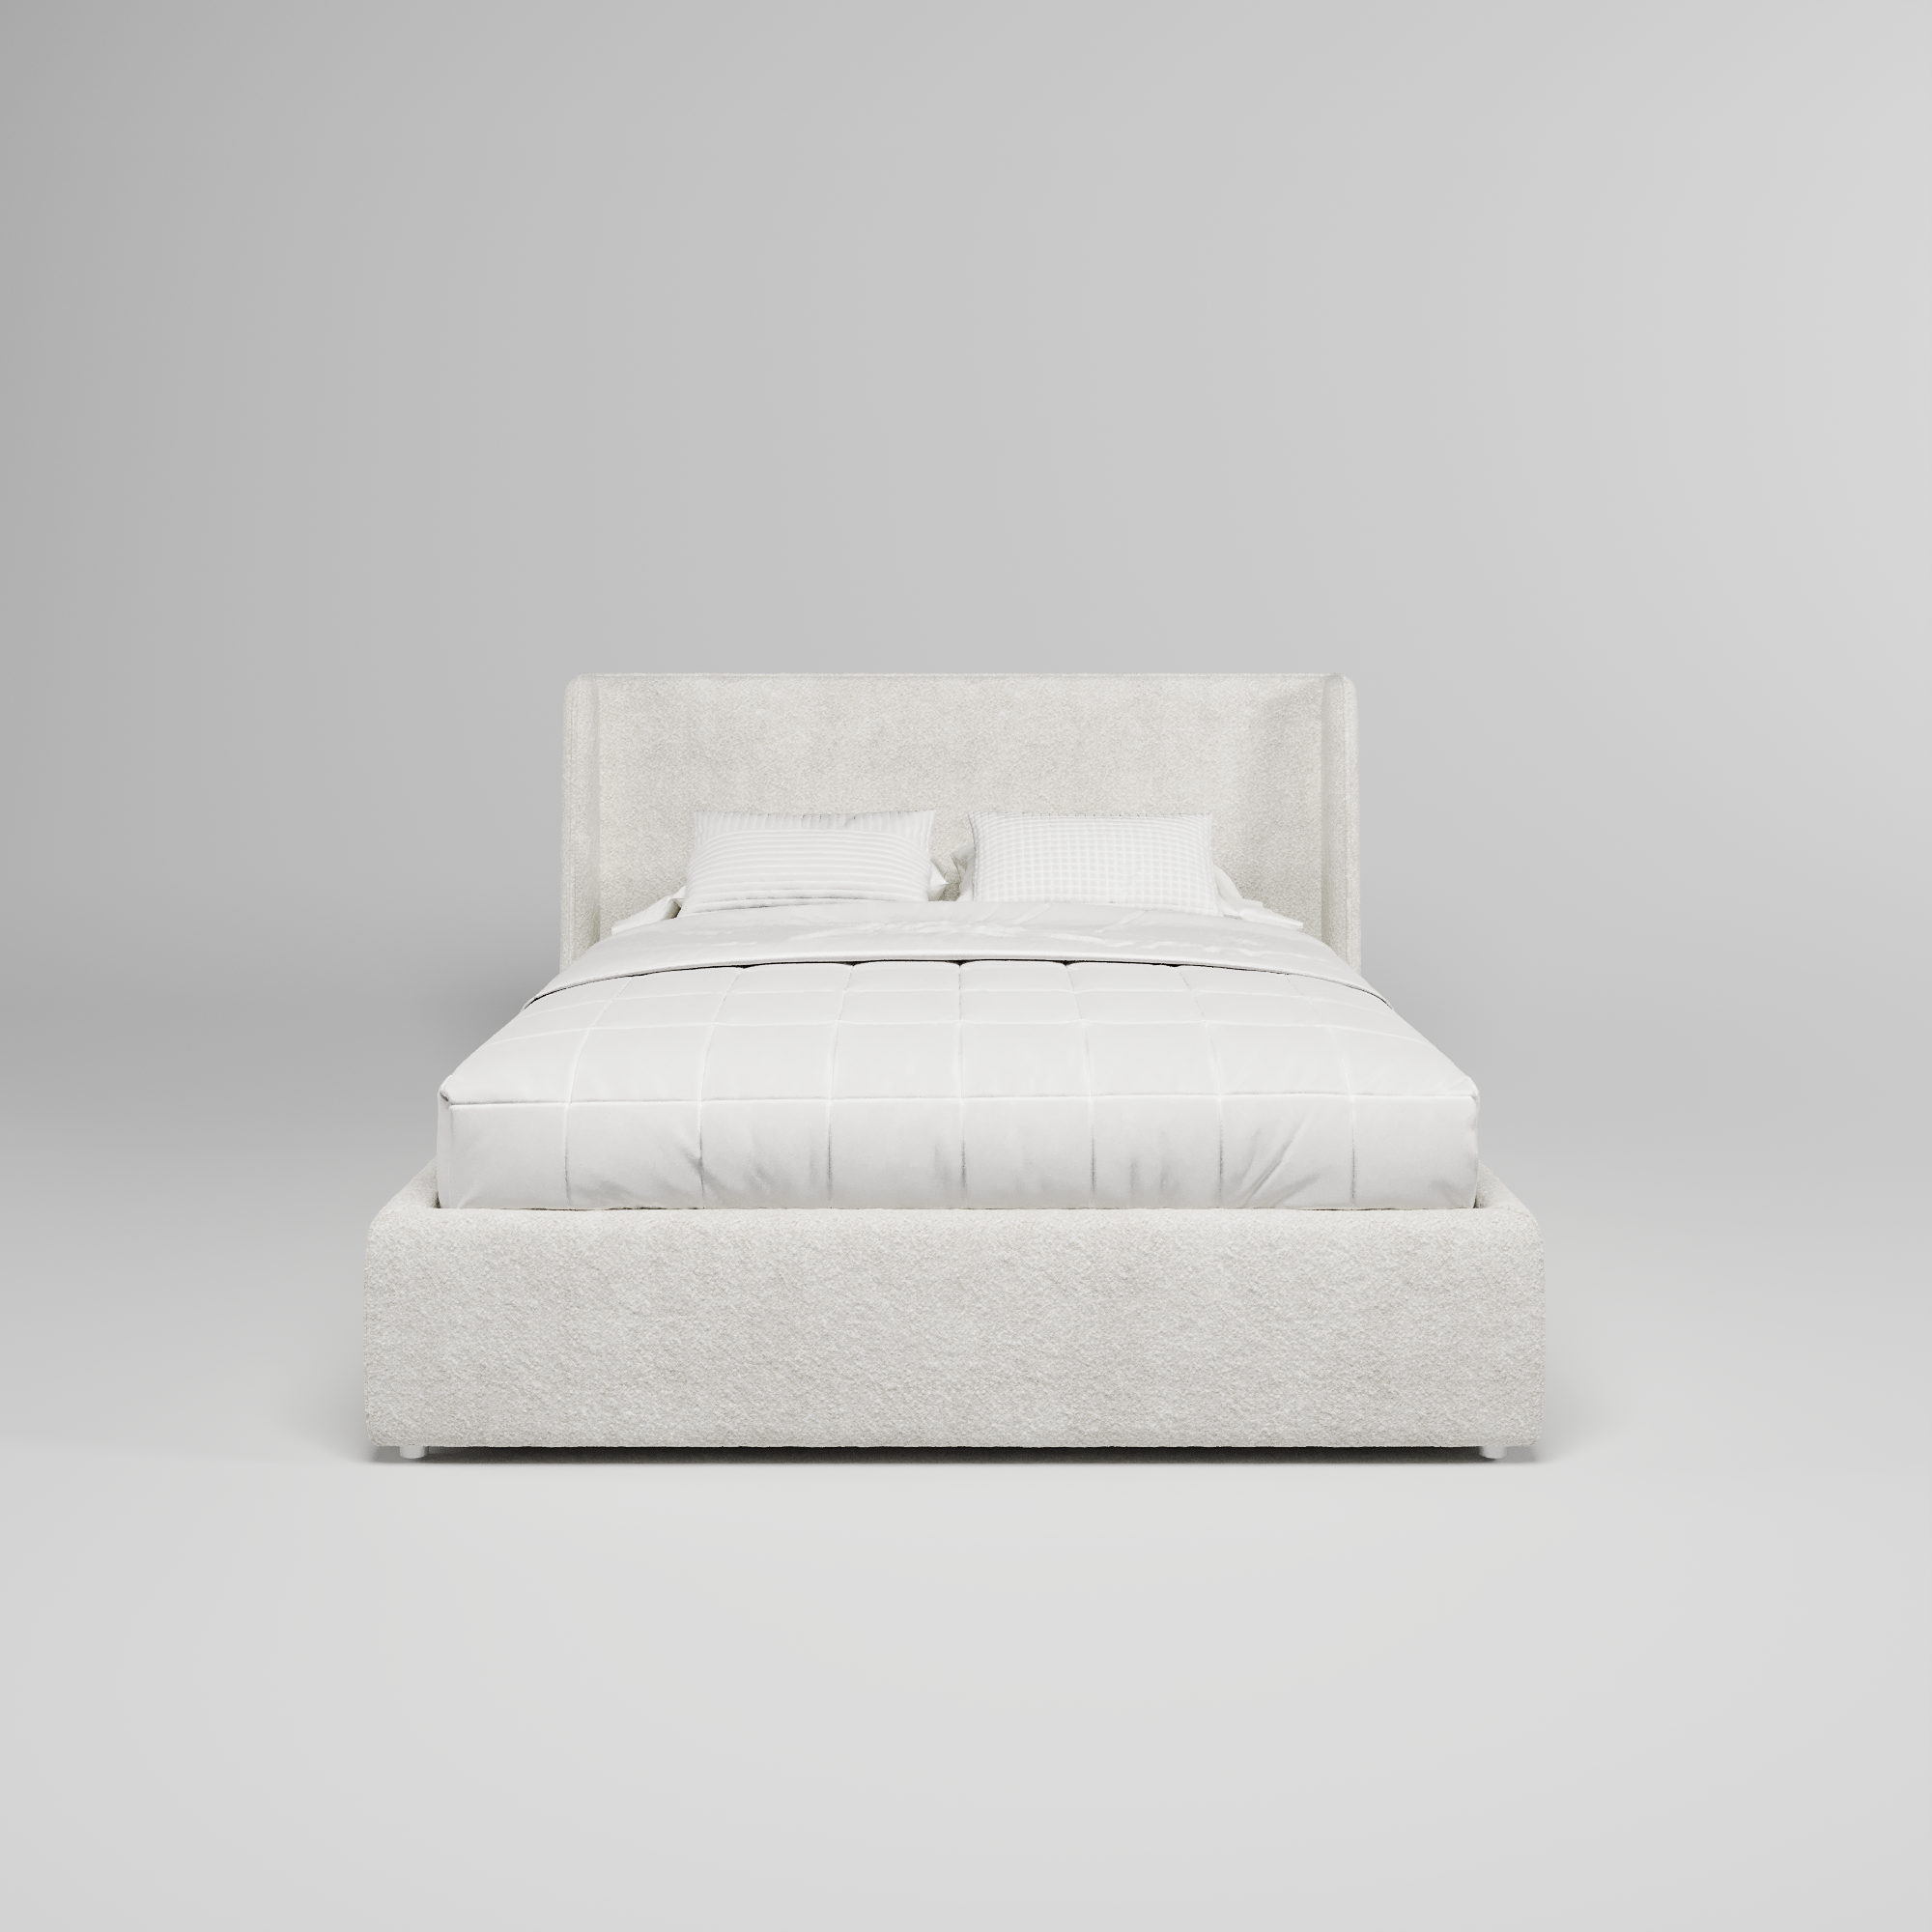 Кровать двуспальная мягкая Lora с подъемным механизмом, 160x200